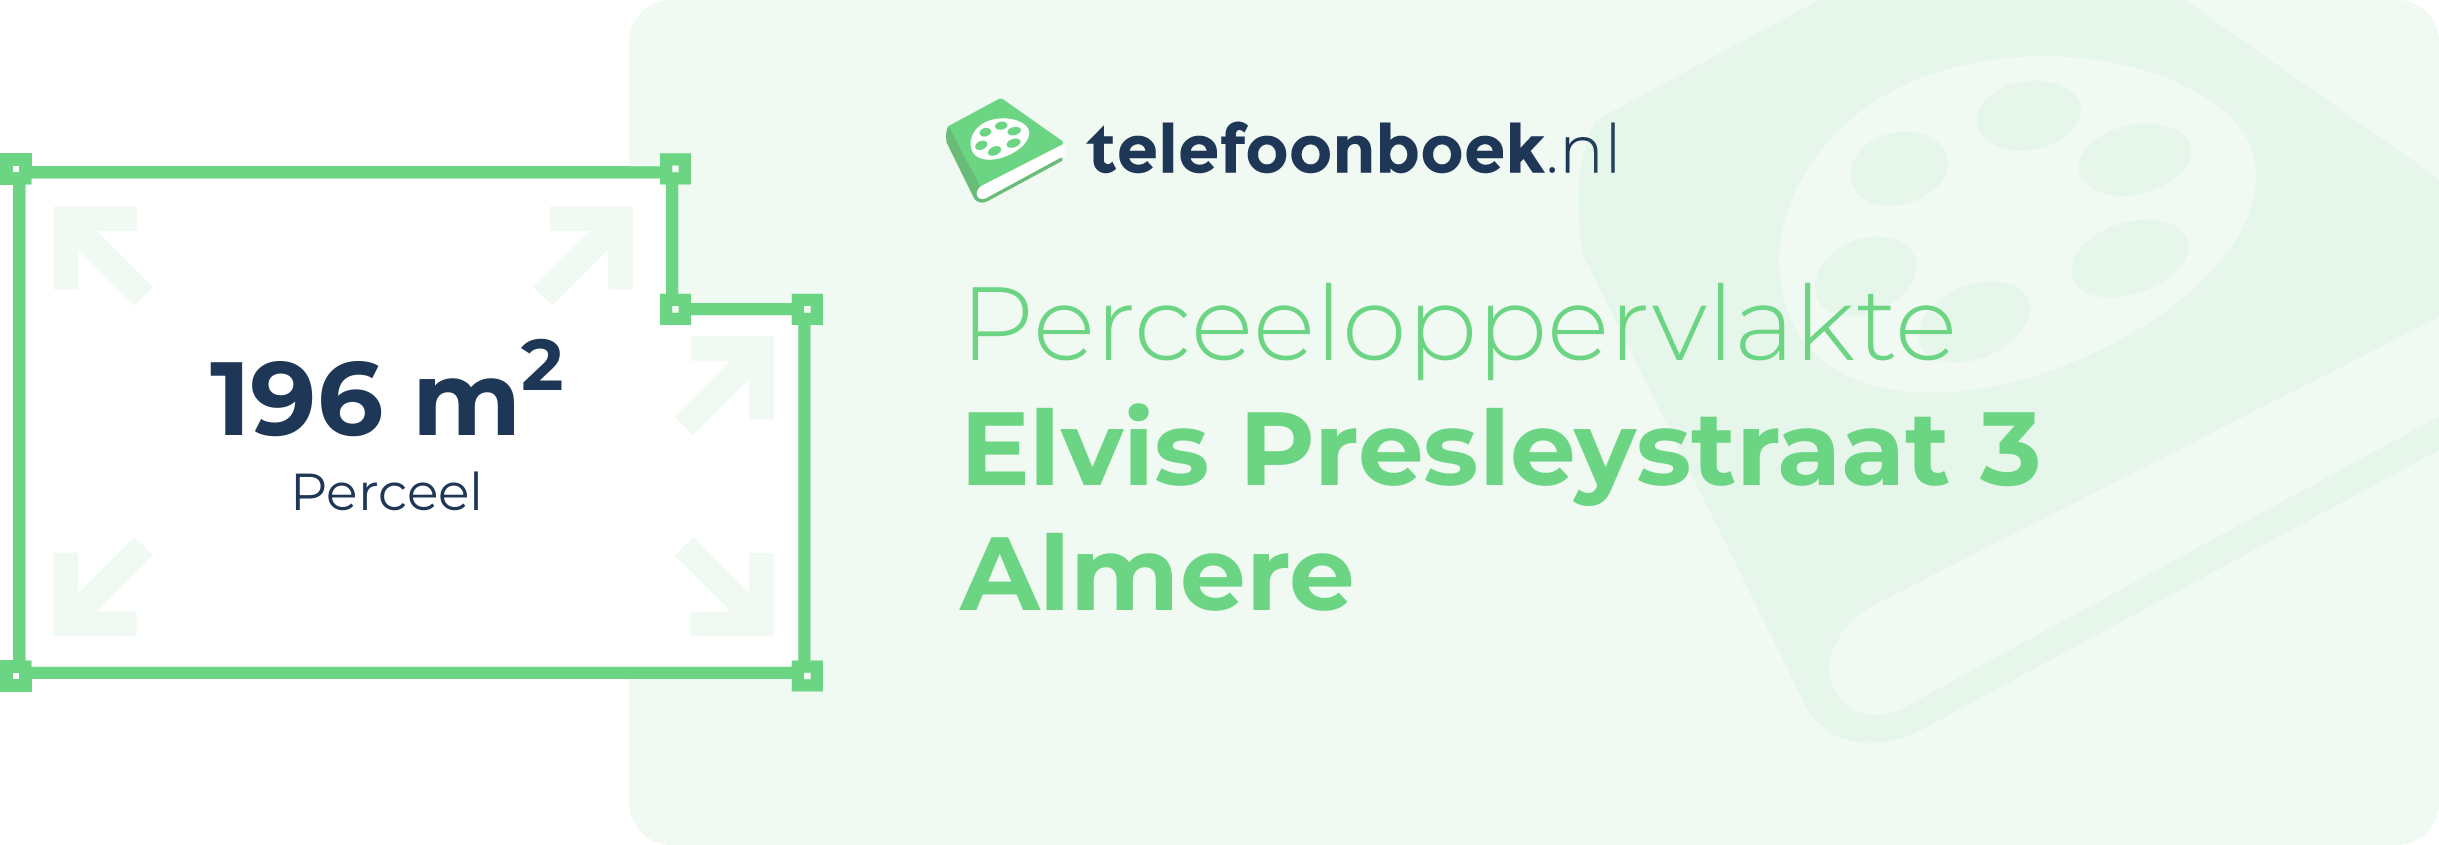 Perceeloppervlakte Elvis Presleystraat 3 Almere